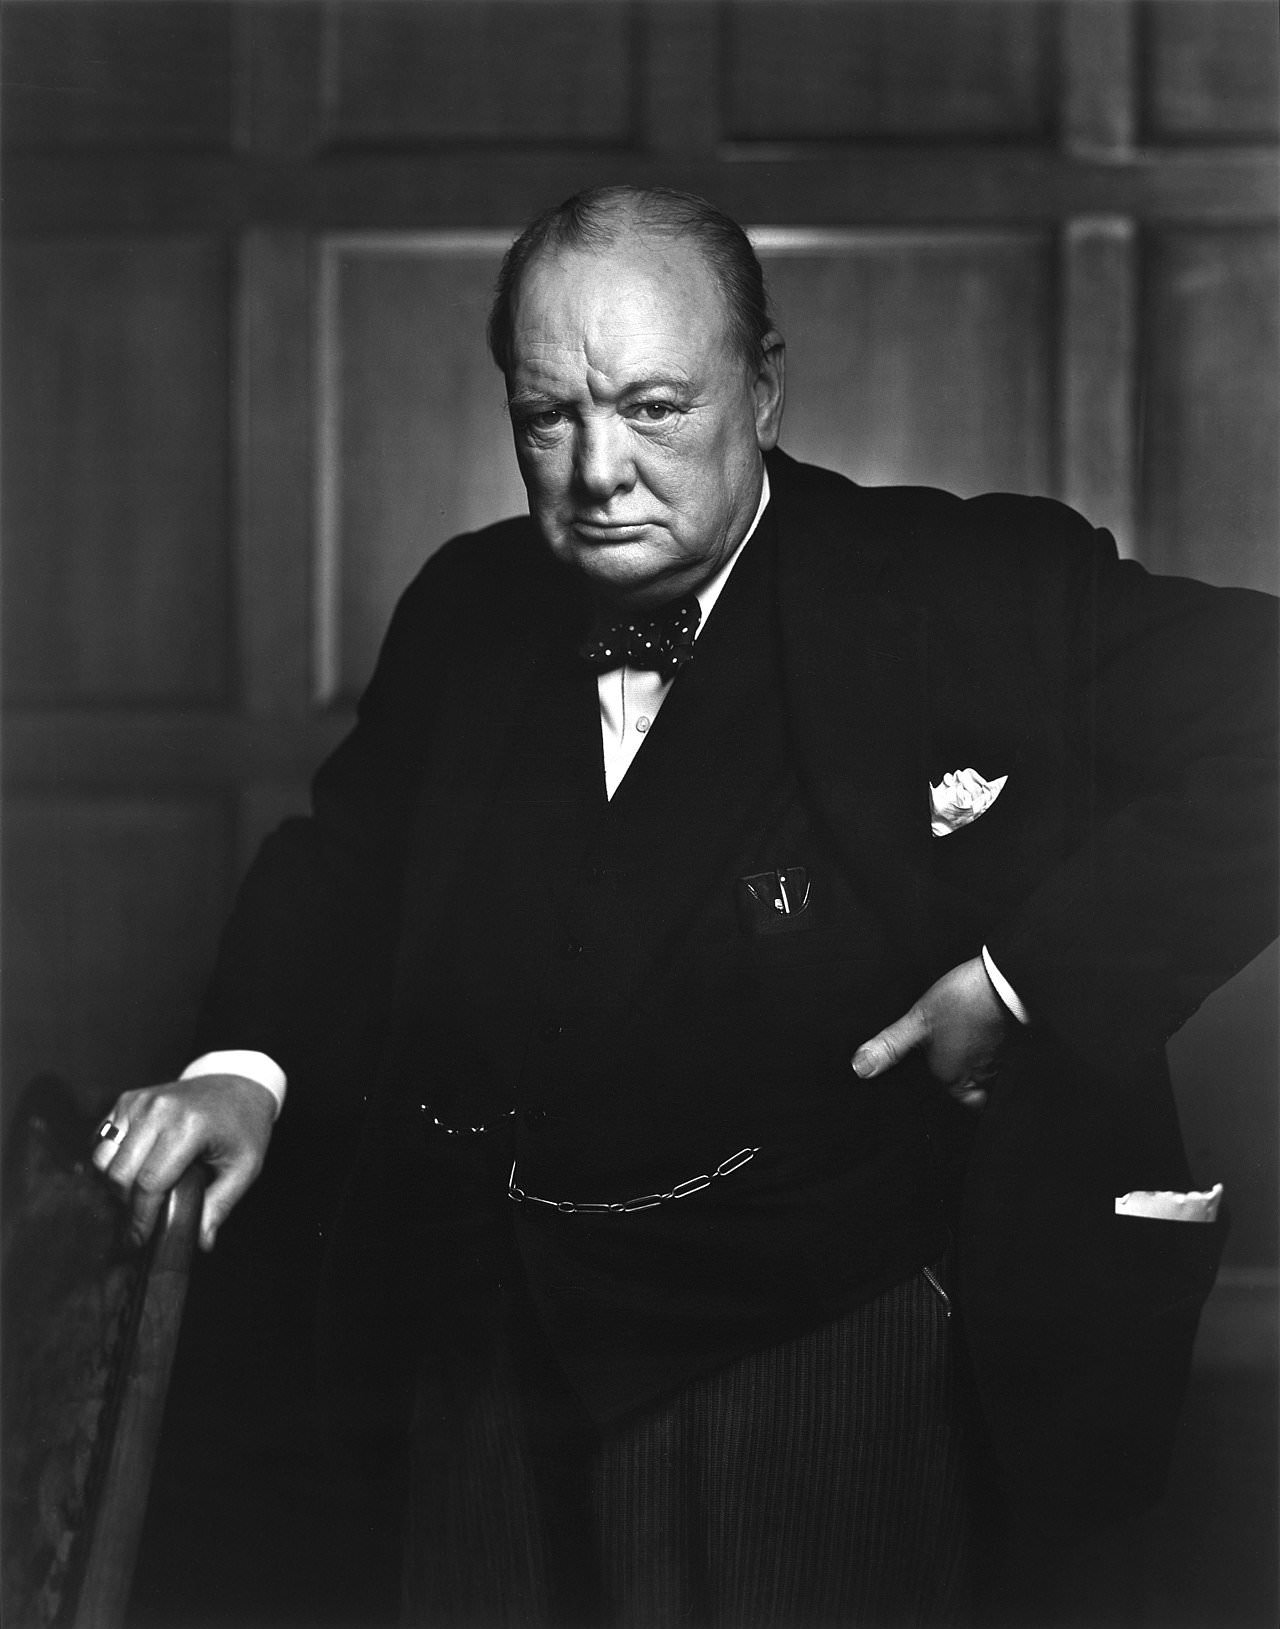 【名人語錄】86句 前英國首相 溫斯頓·邱吉爾經典名言語錄：如果糾纏於過去與現在，我們將失去未來 | 中英文對照名言佳句 Winston Churchill Quotes 